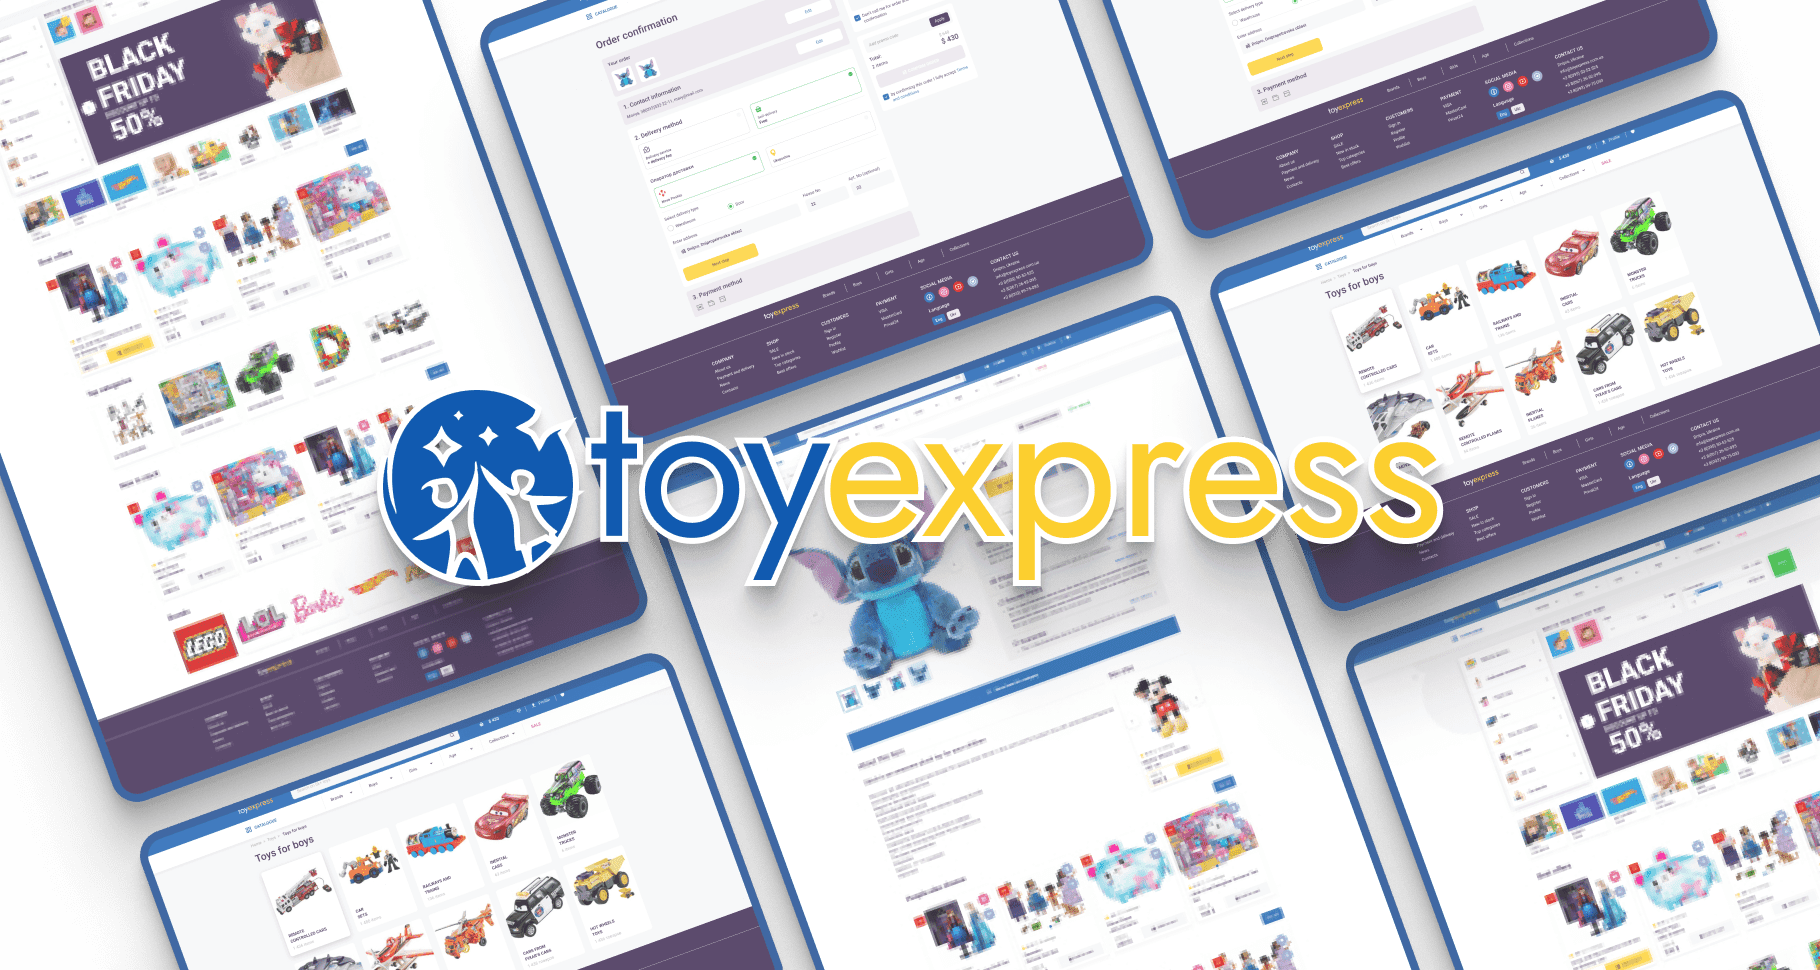 Toyexpress Website for E-commerce 